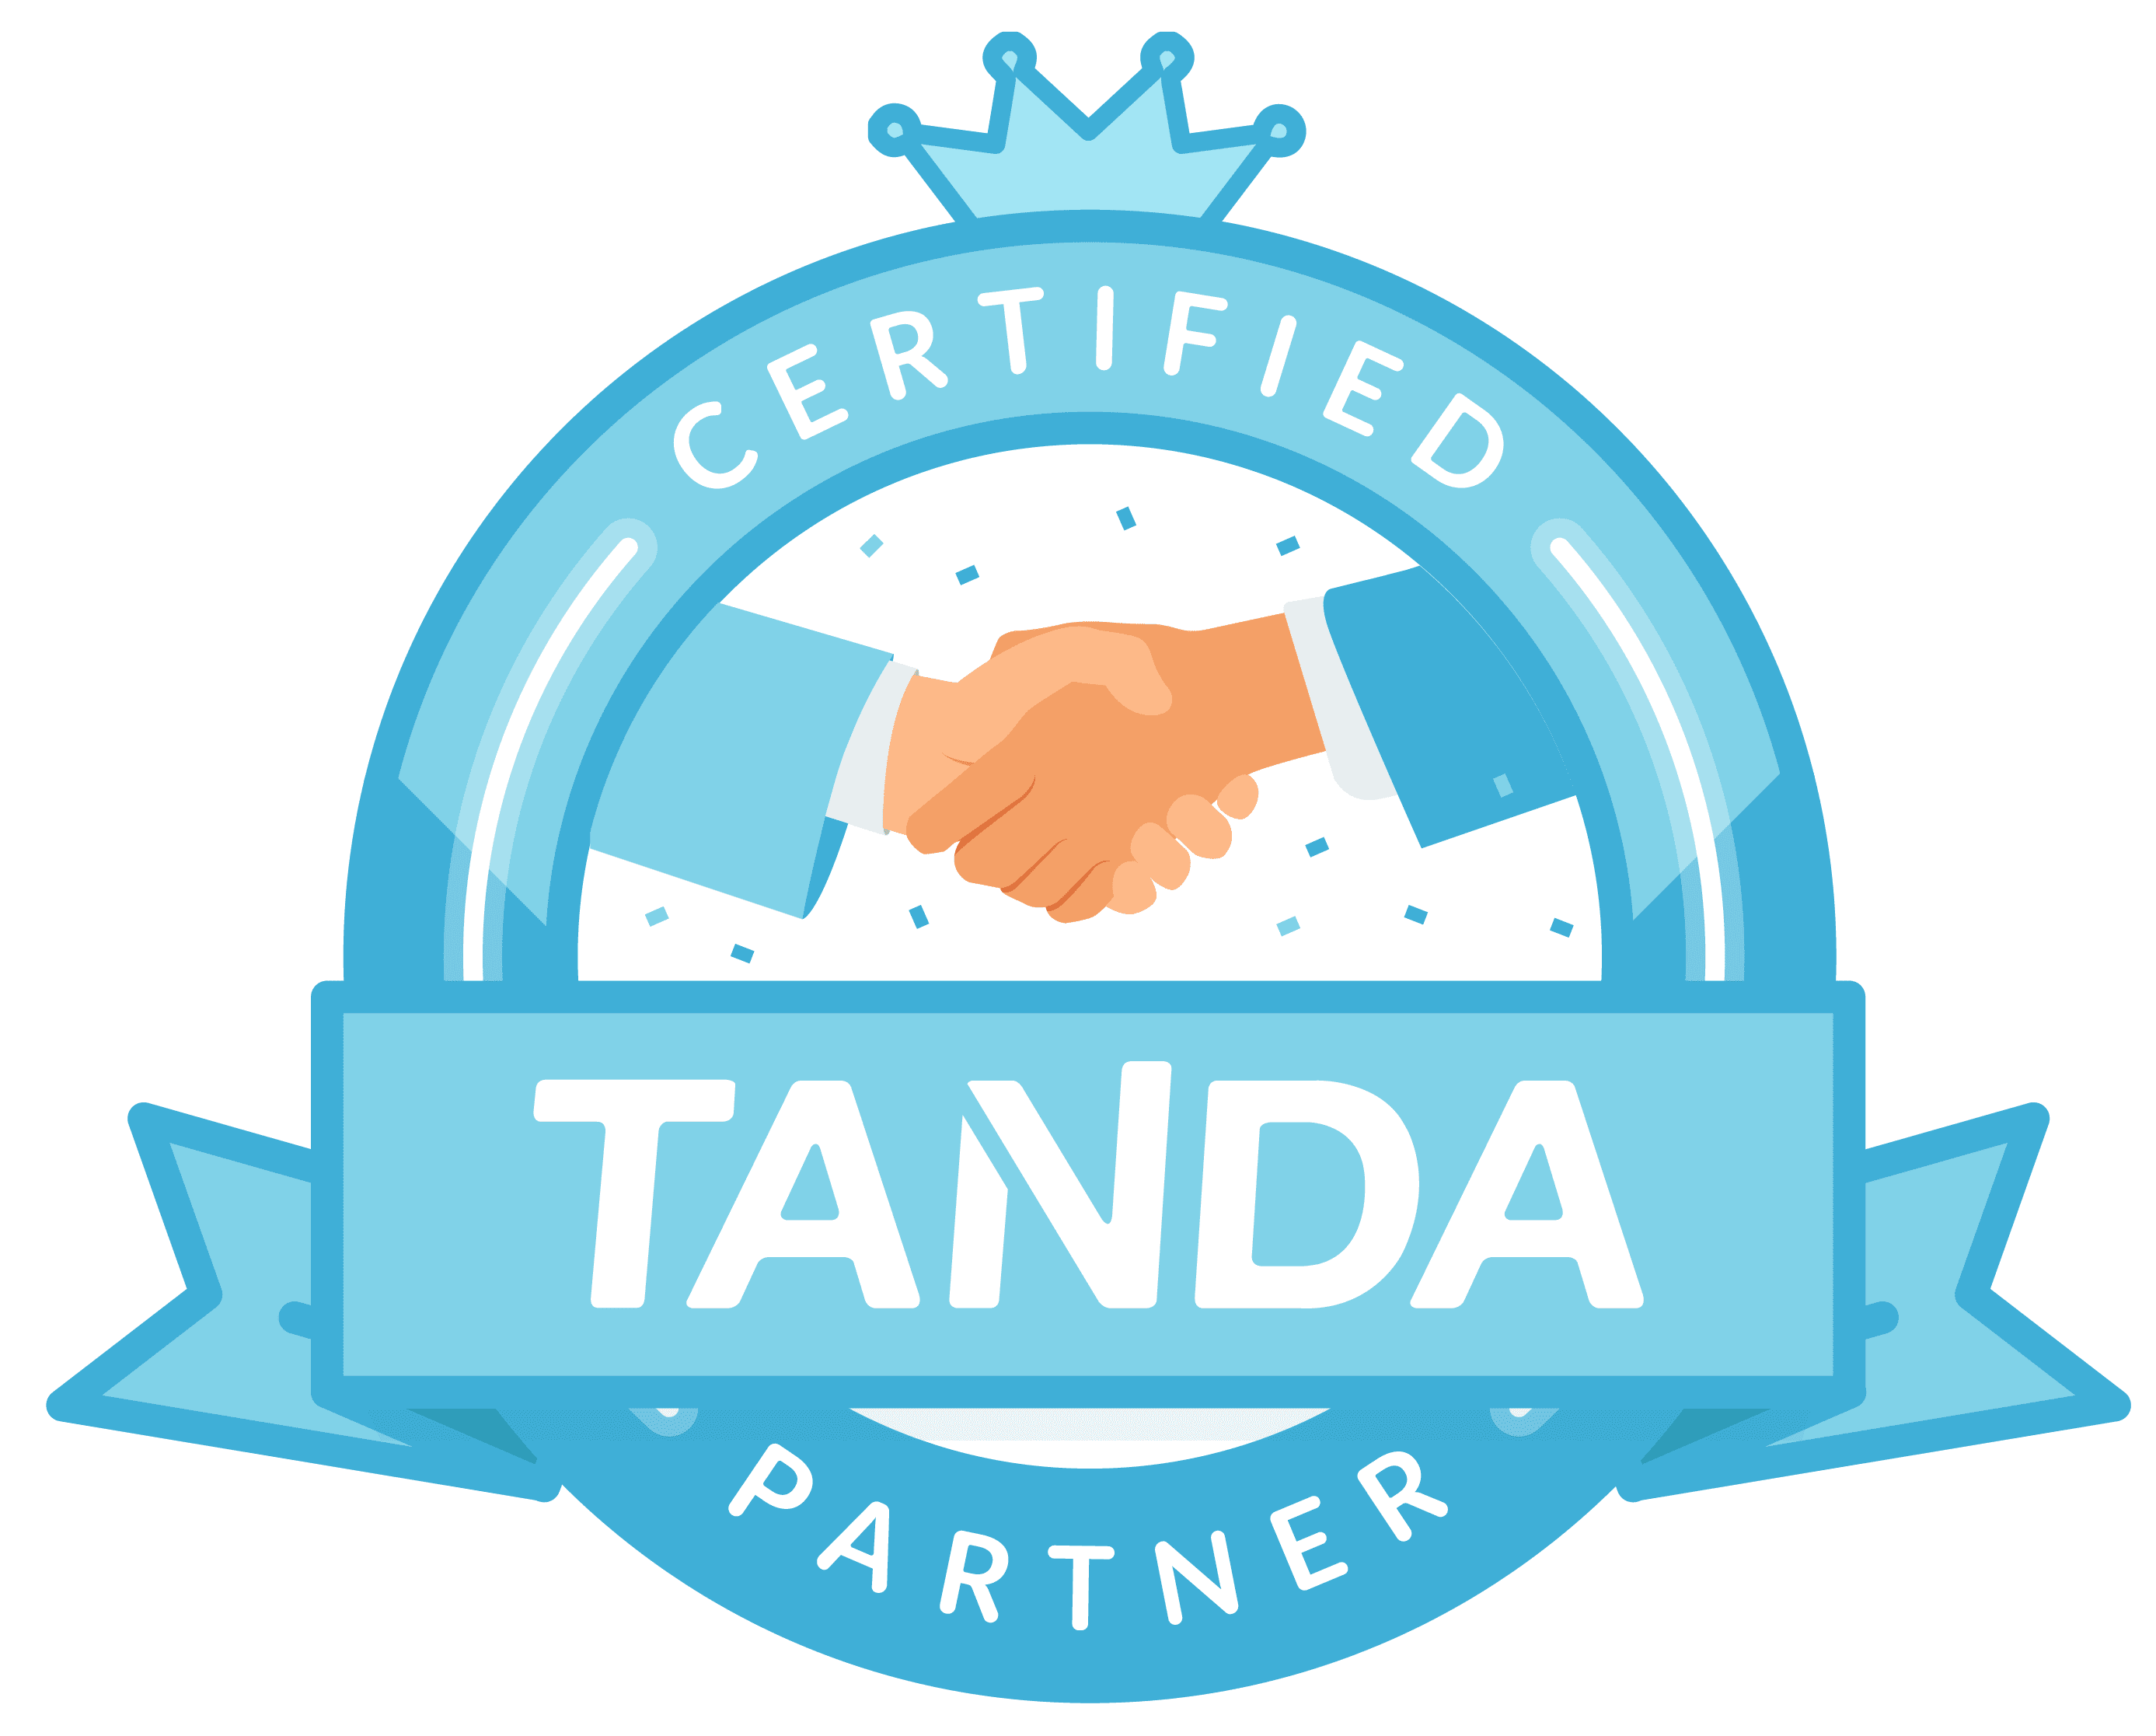 Tanda_Partner-01